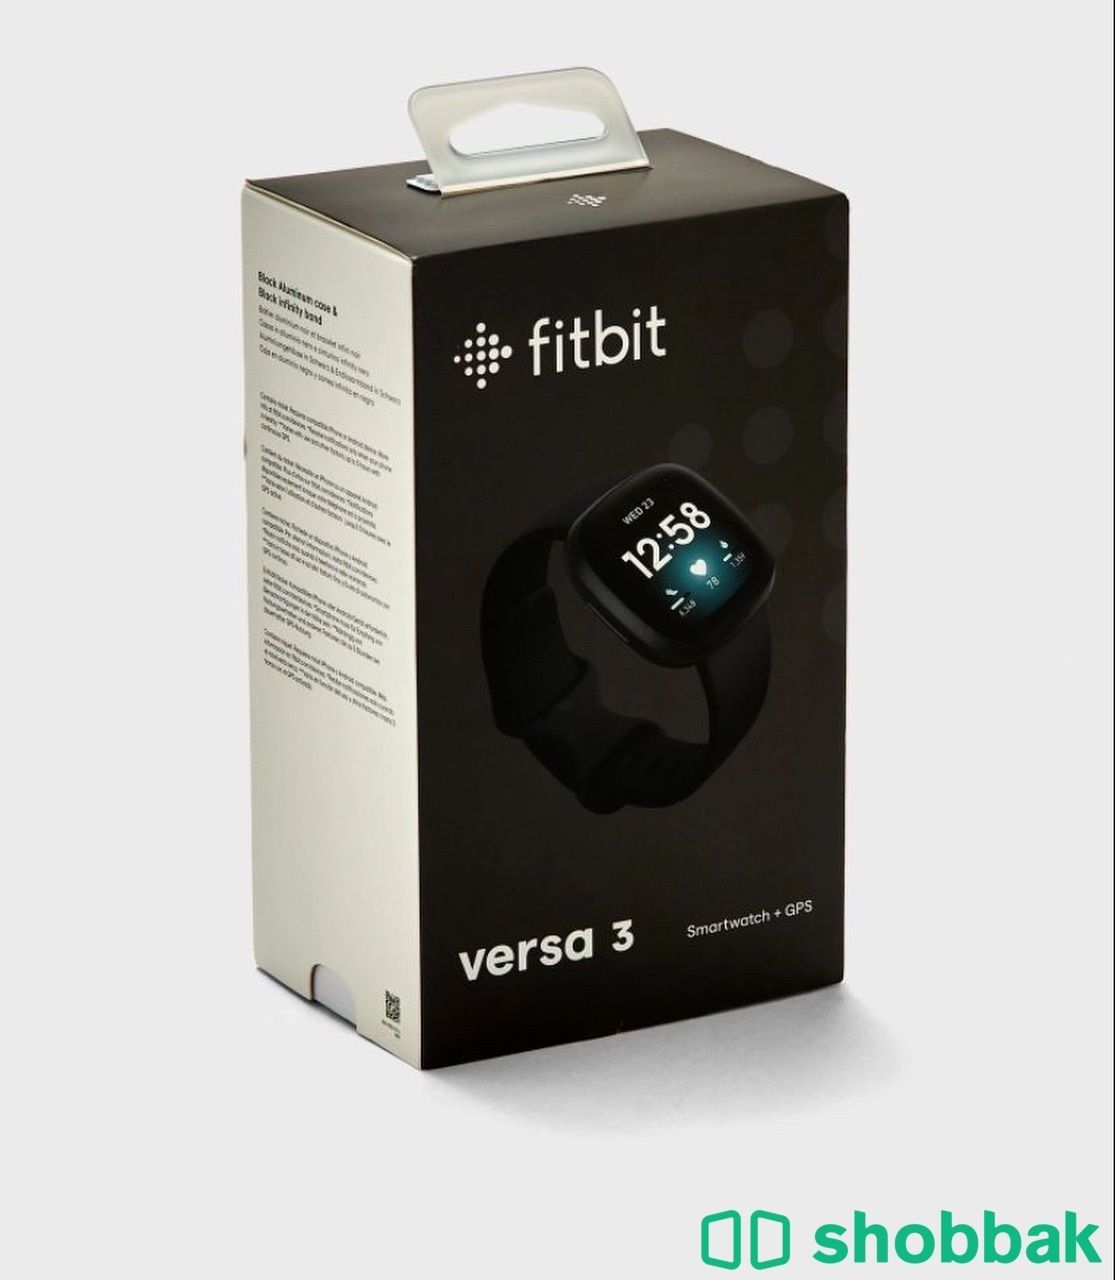 ساعة Fitbit Versa 3 الاصدار الثالث فت بت او فتبت شباك السعودية